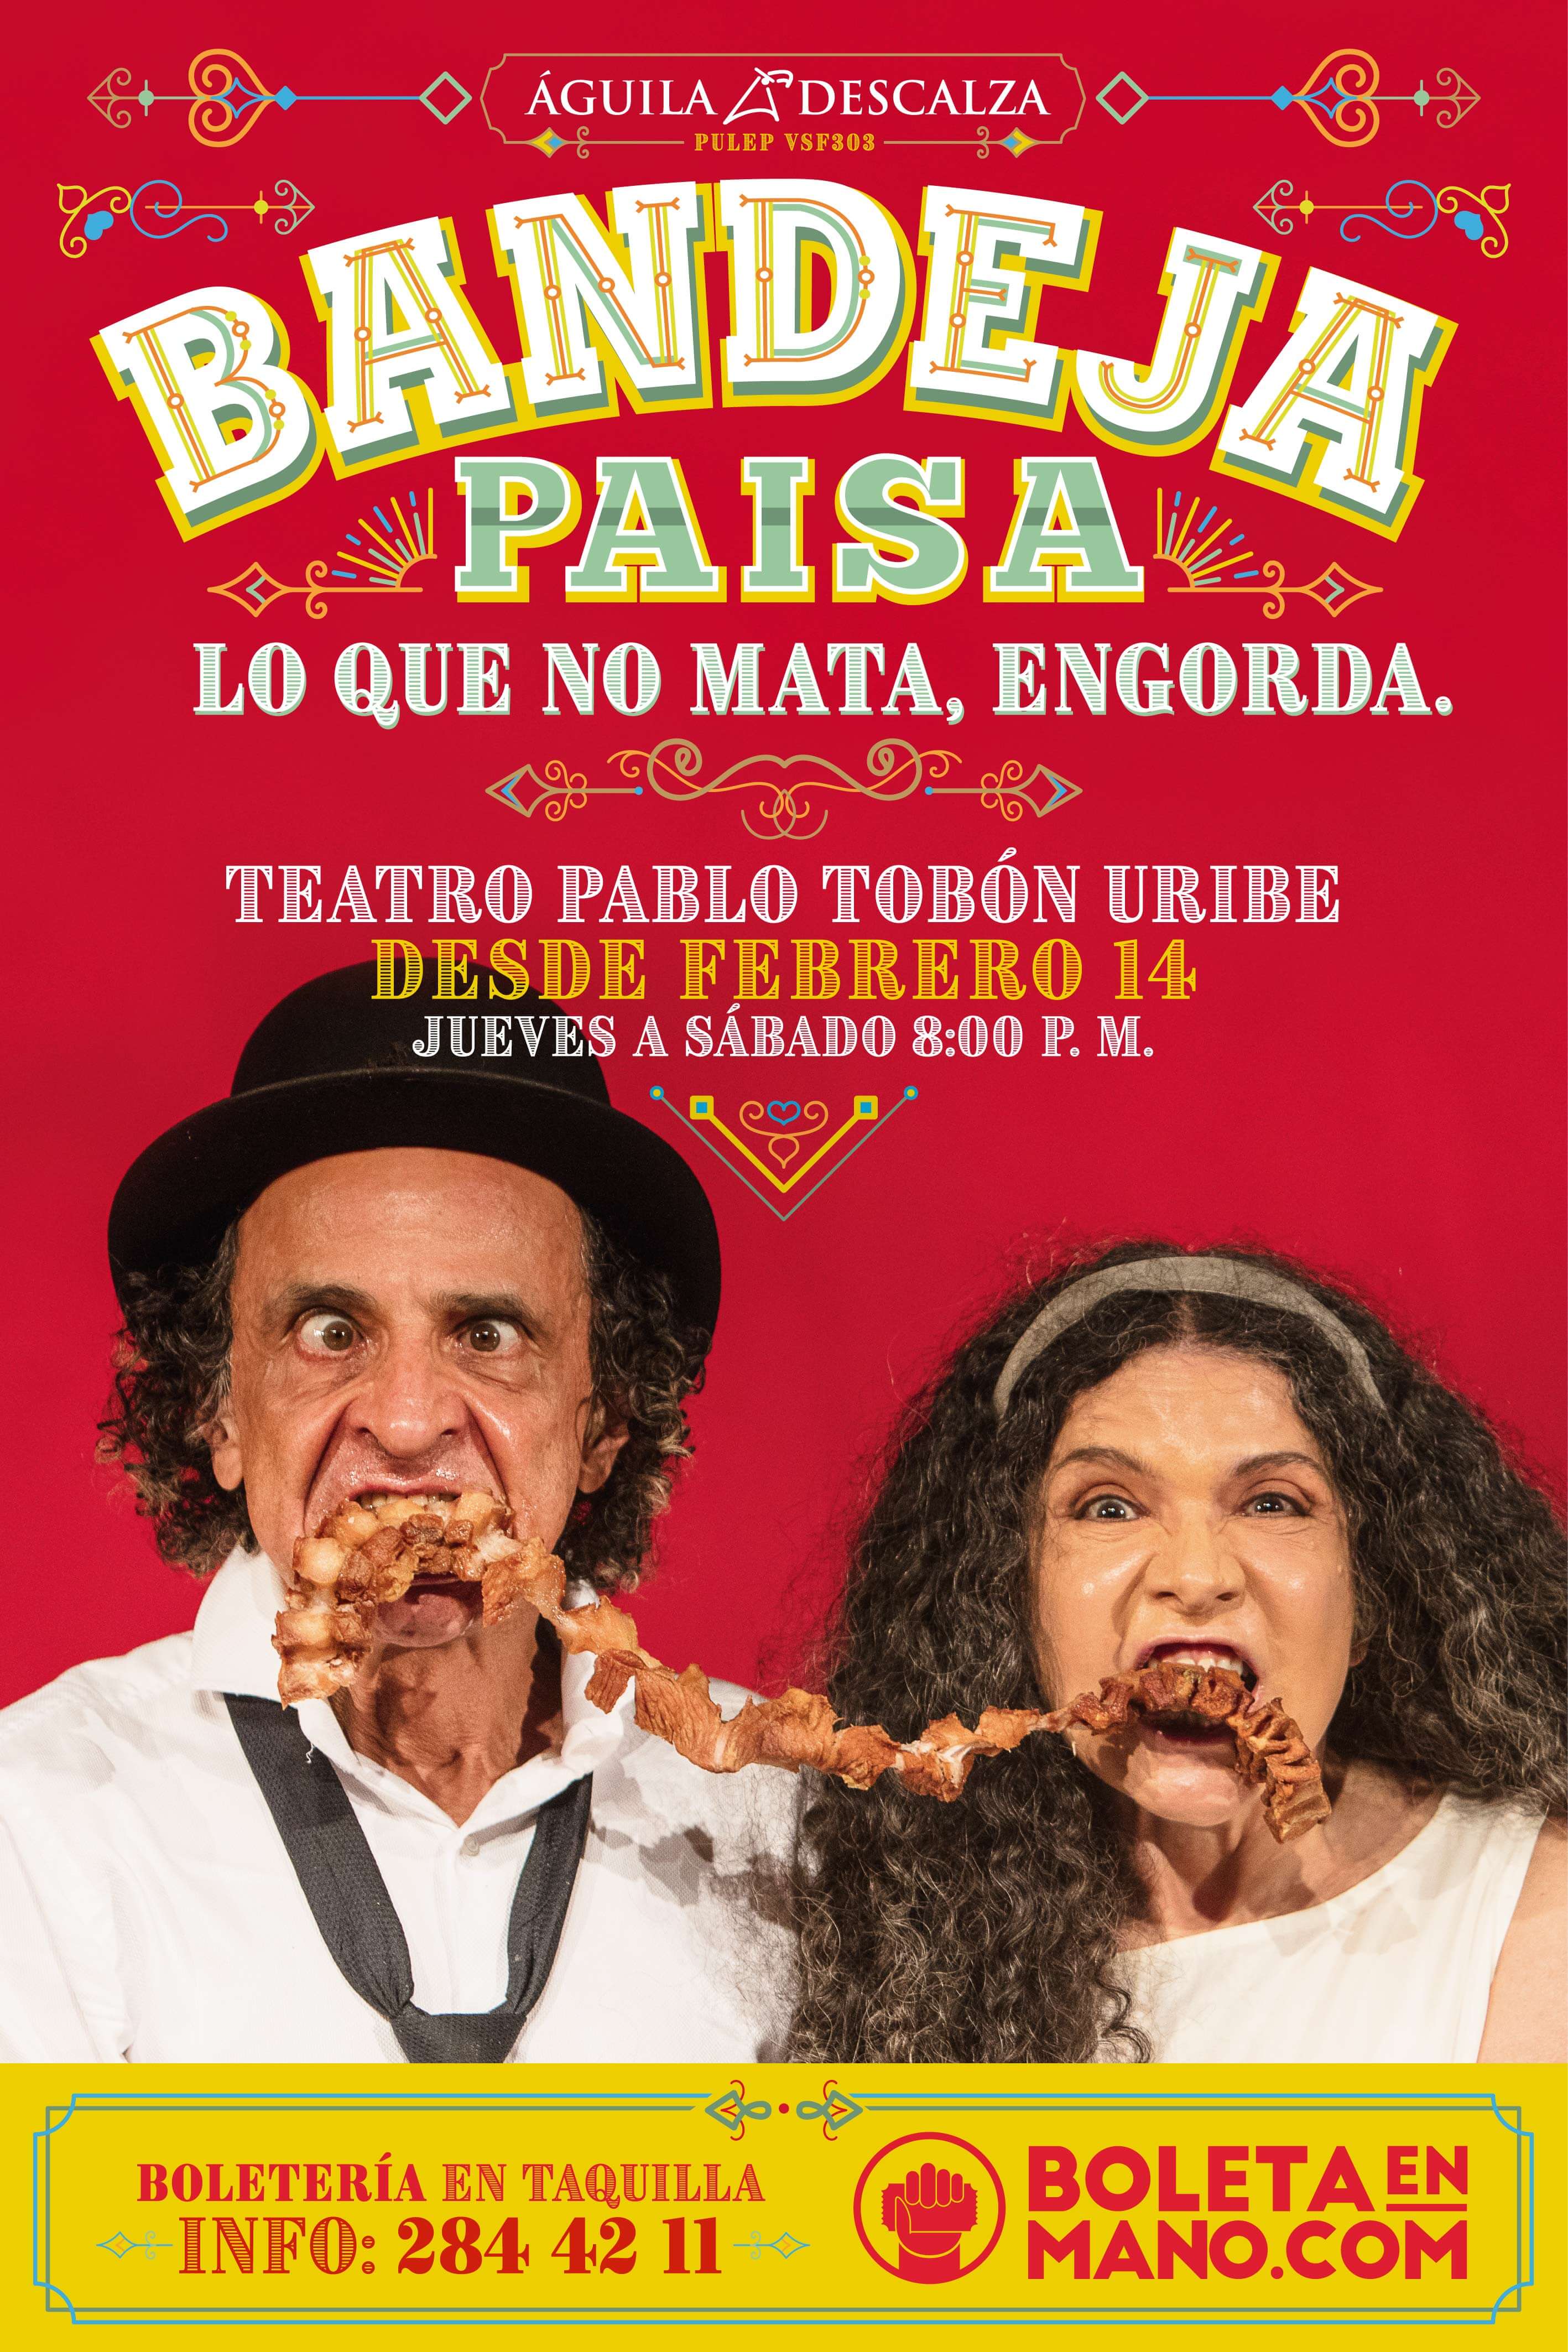 traición Cualquier Contestar el teléfono Bandeja paisa, la nueva obra de El Águila Descalza en el Teatro Pablo Tobón  Uribe